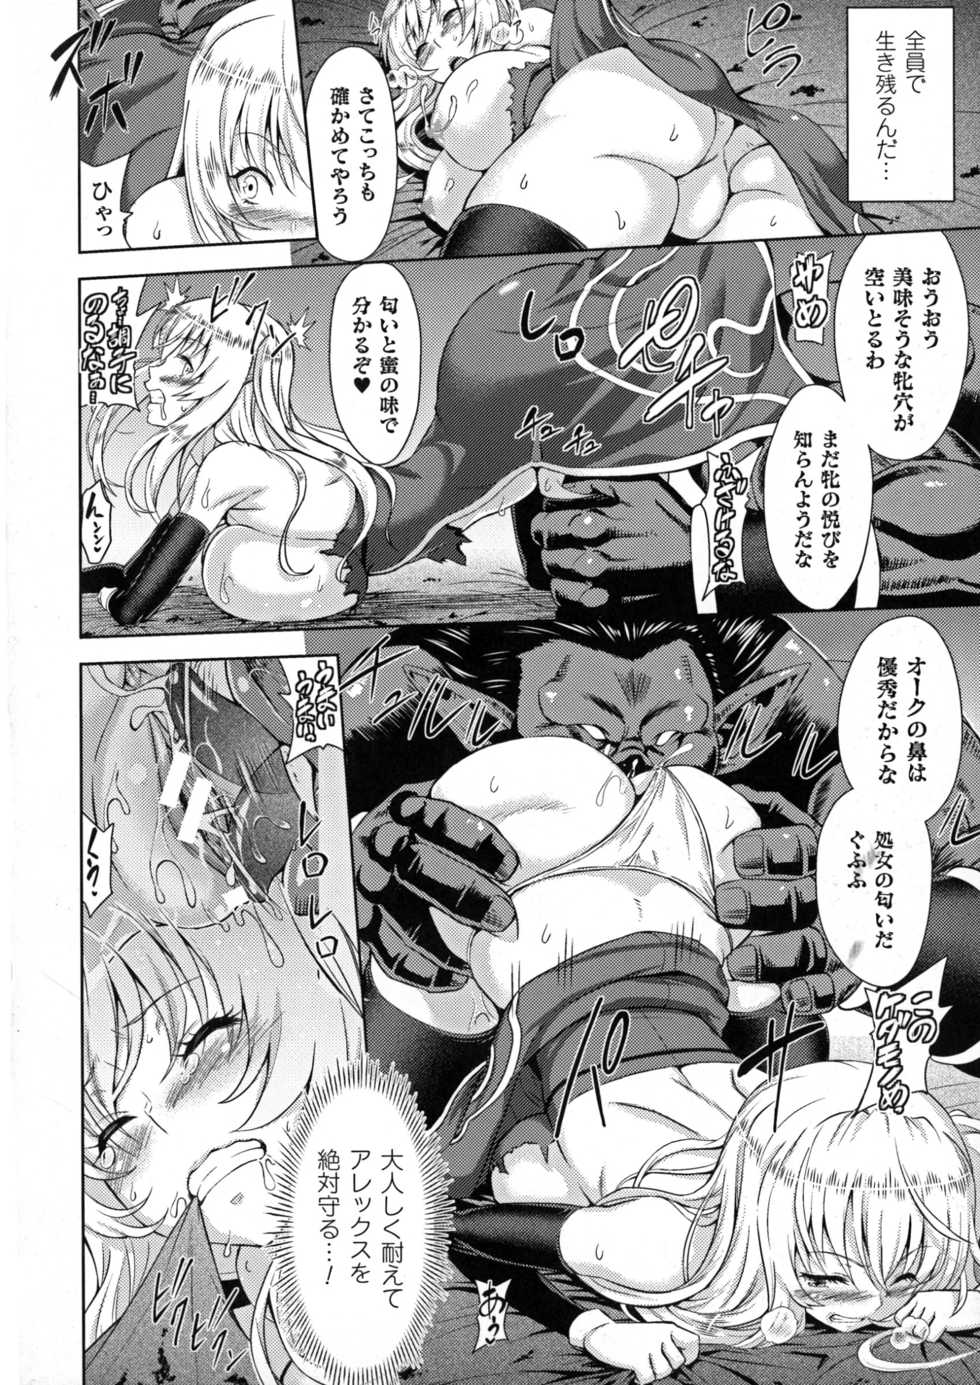 [Anthology] Seigi no Heroine Kangoku File DX Vol. 7 - Page 18